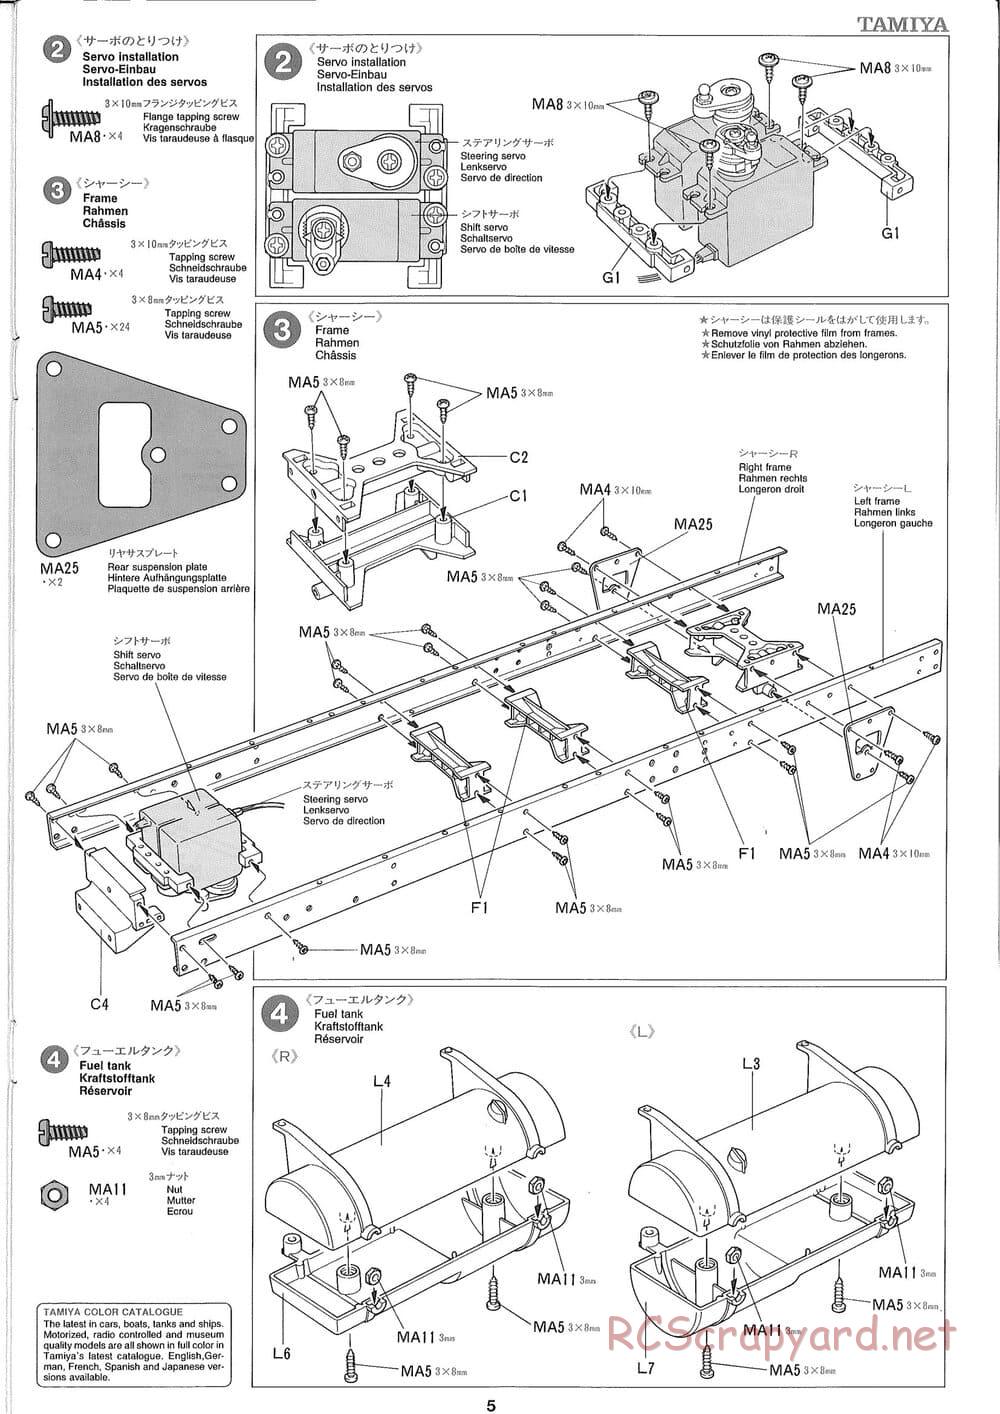 Tamiya - Ford Aeromax - Manual - Page 5